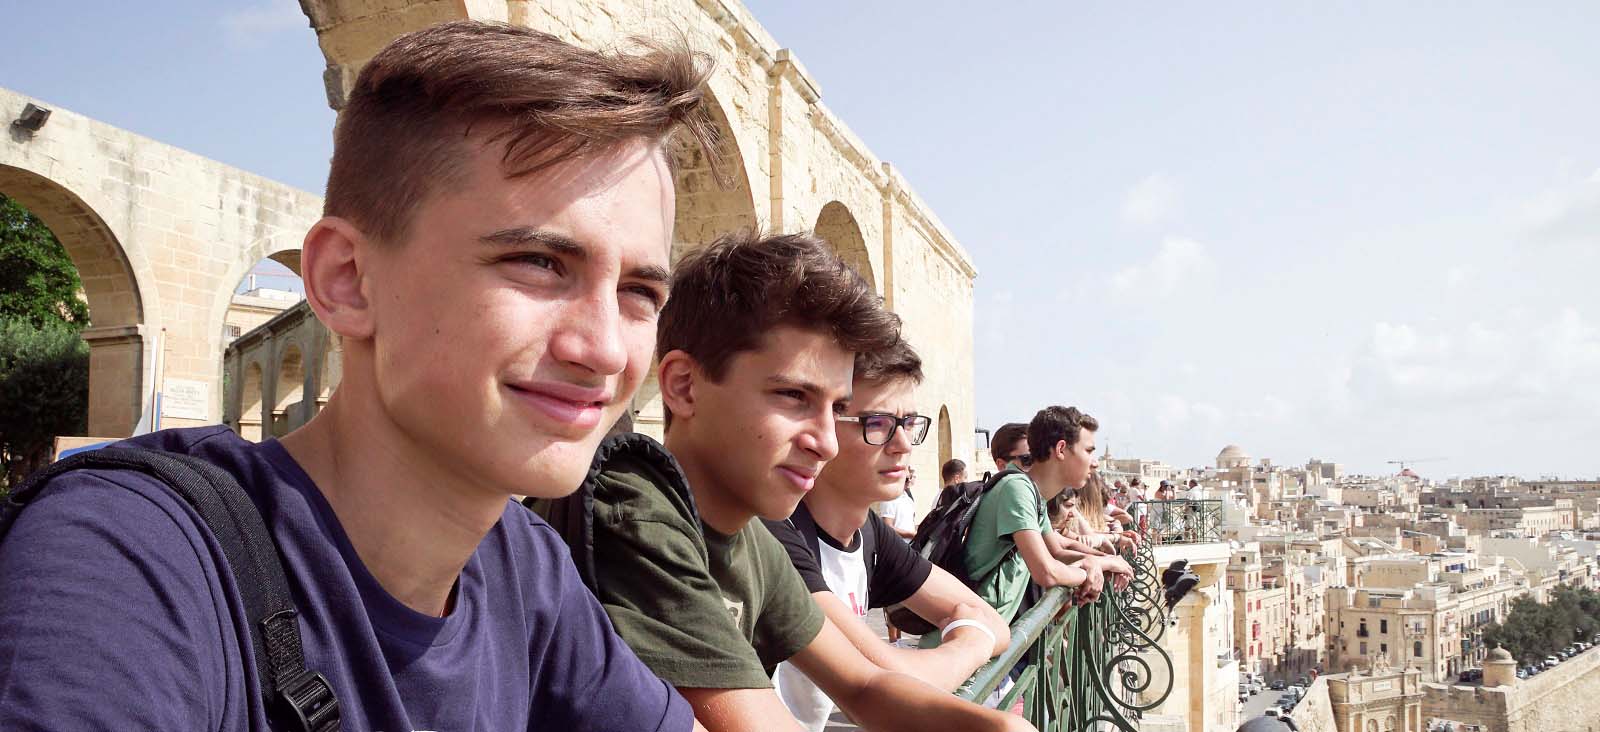 İngilizce kurslarıyla birlikte Malta’da kapalı grup gezileri